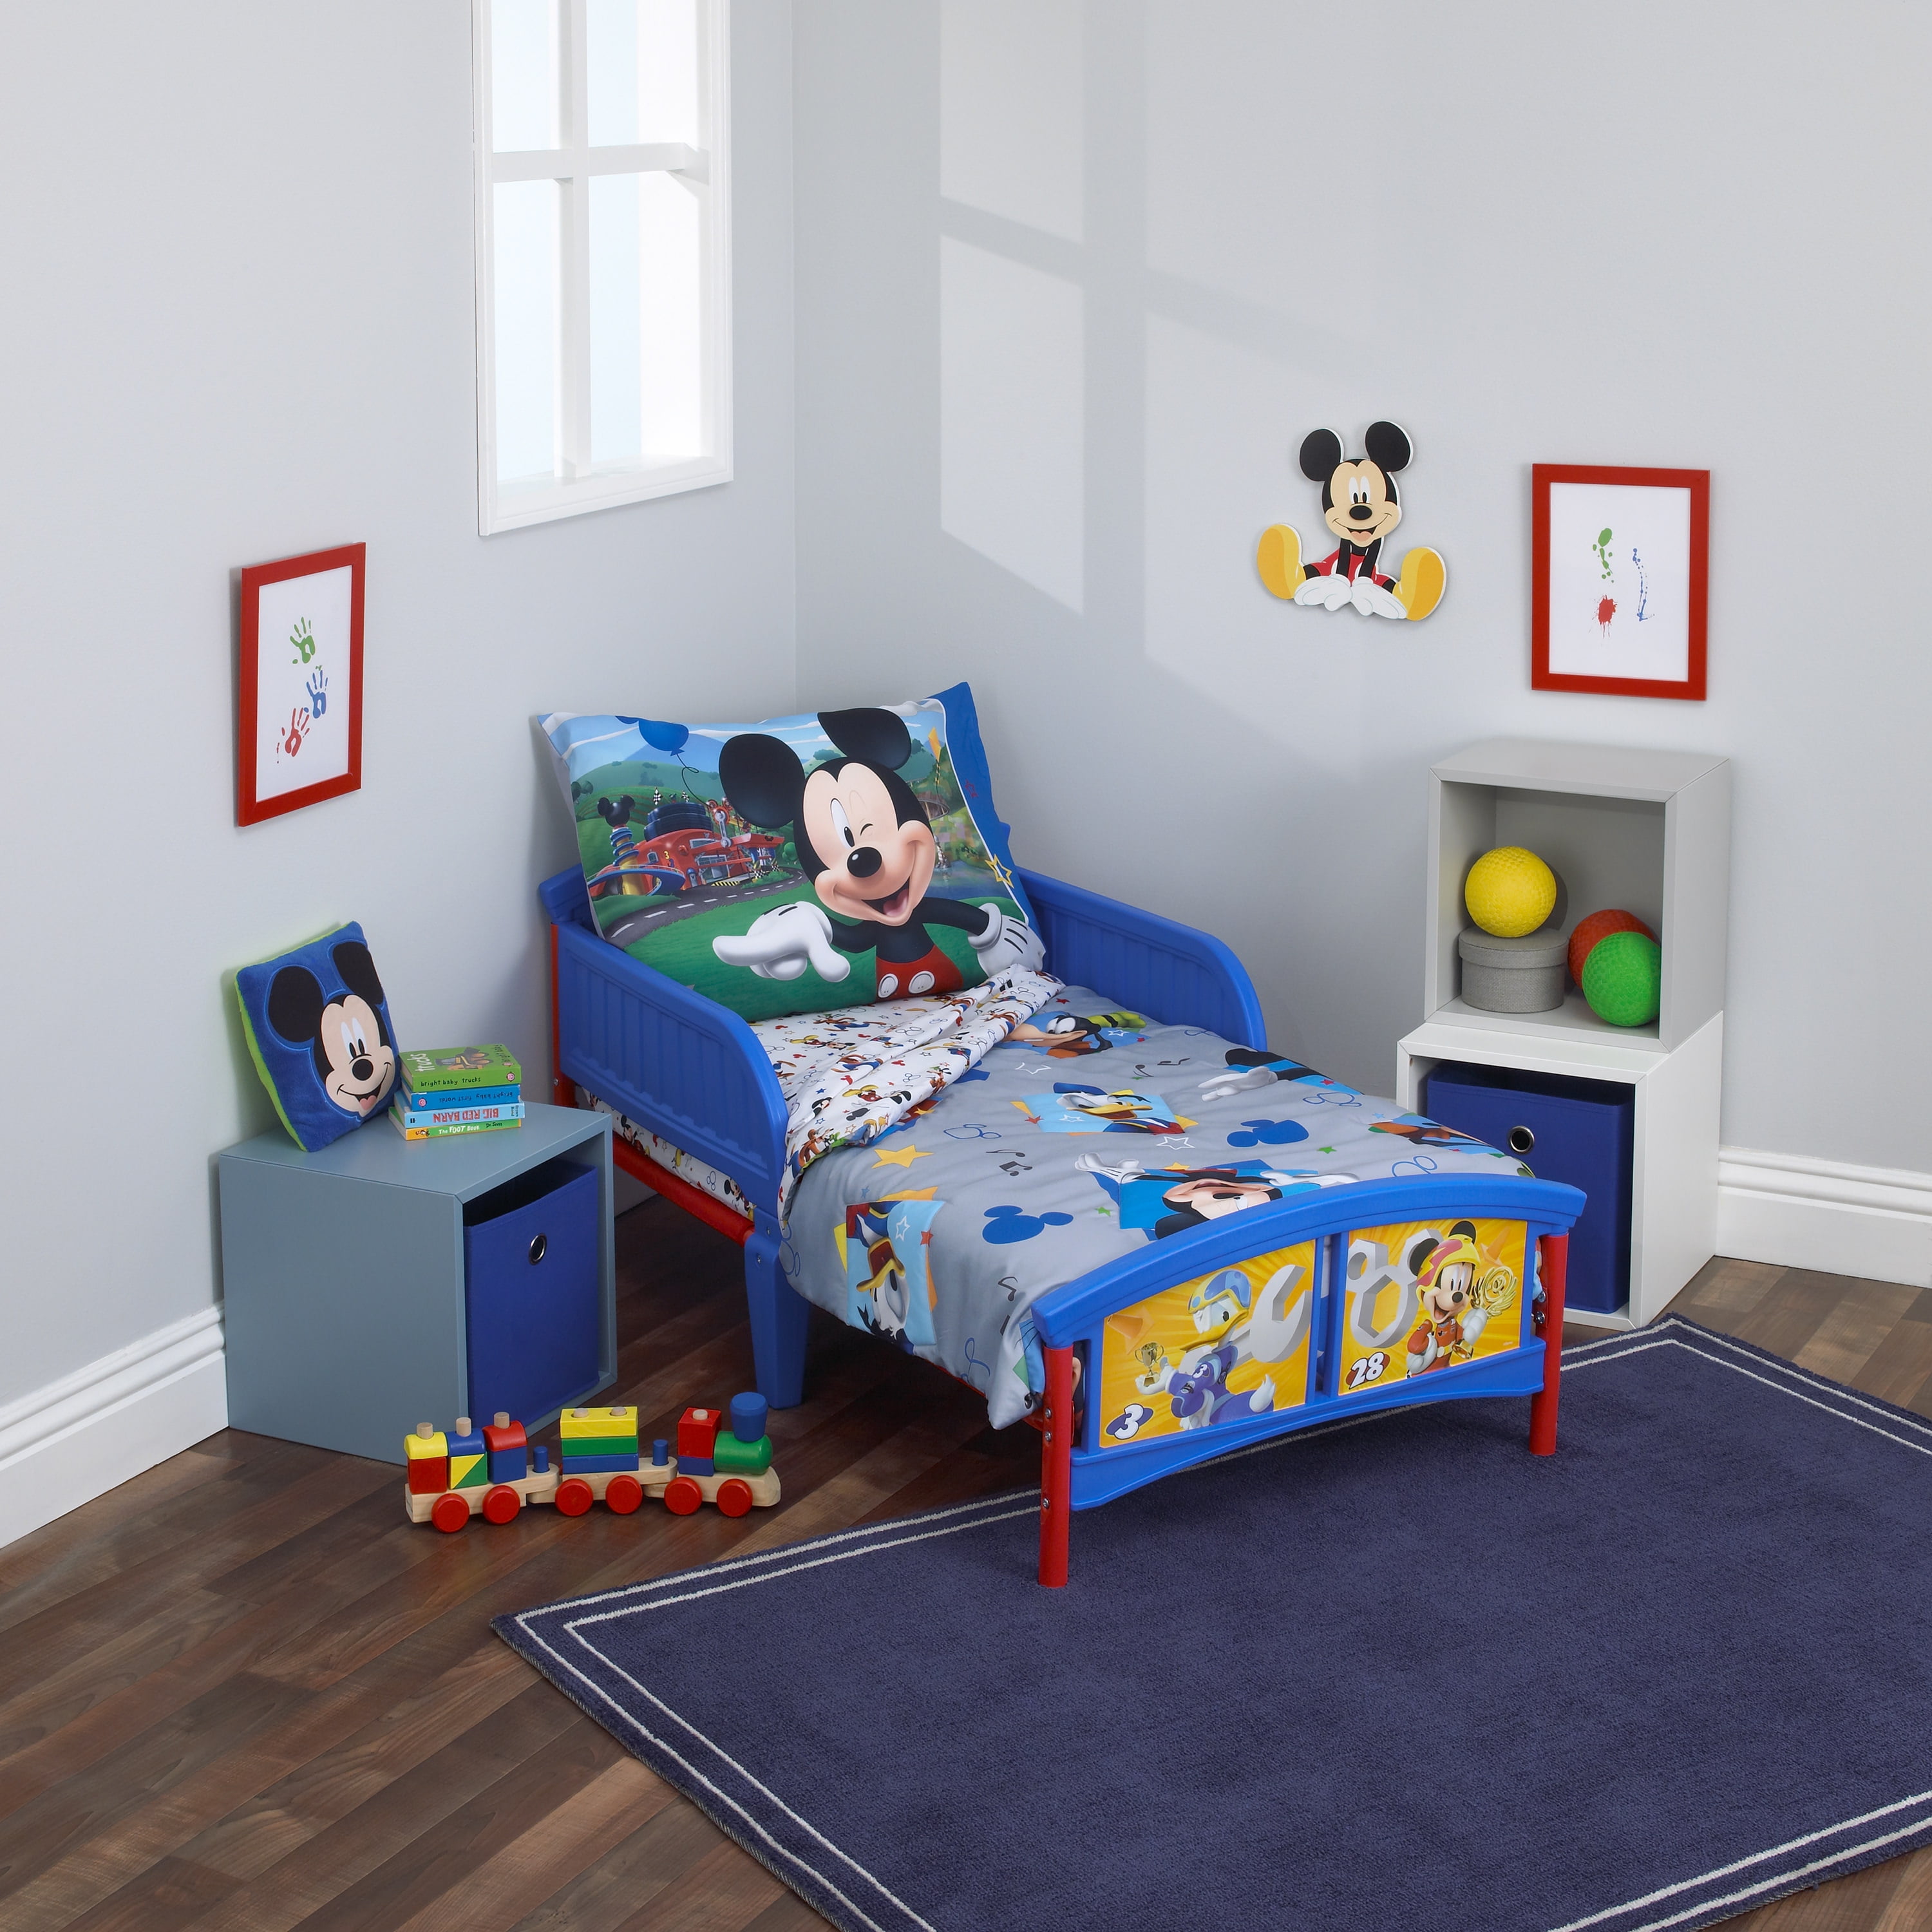 Mickey Mouse Nursery Decor & Bedding